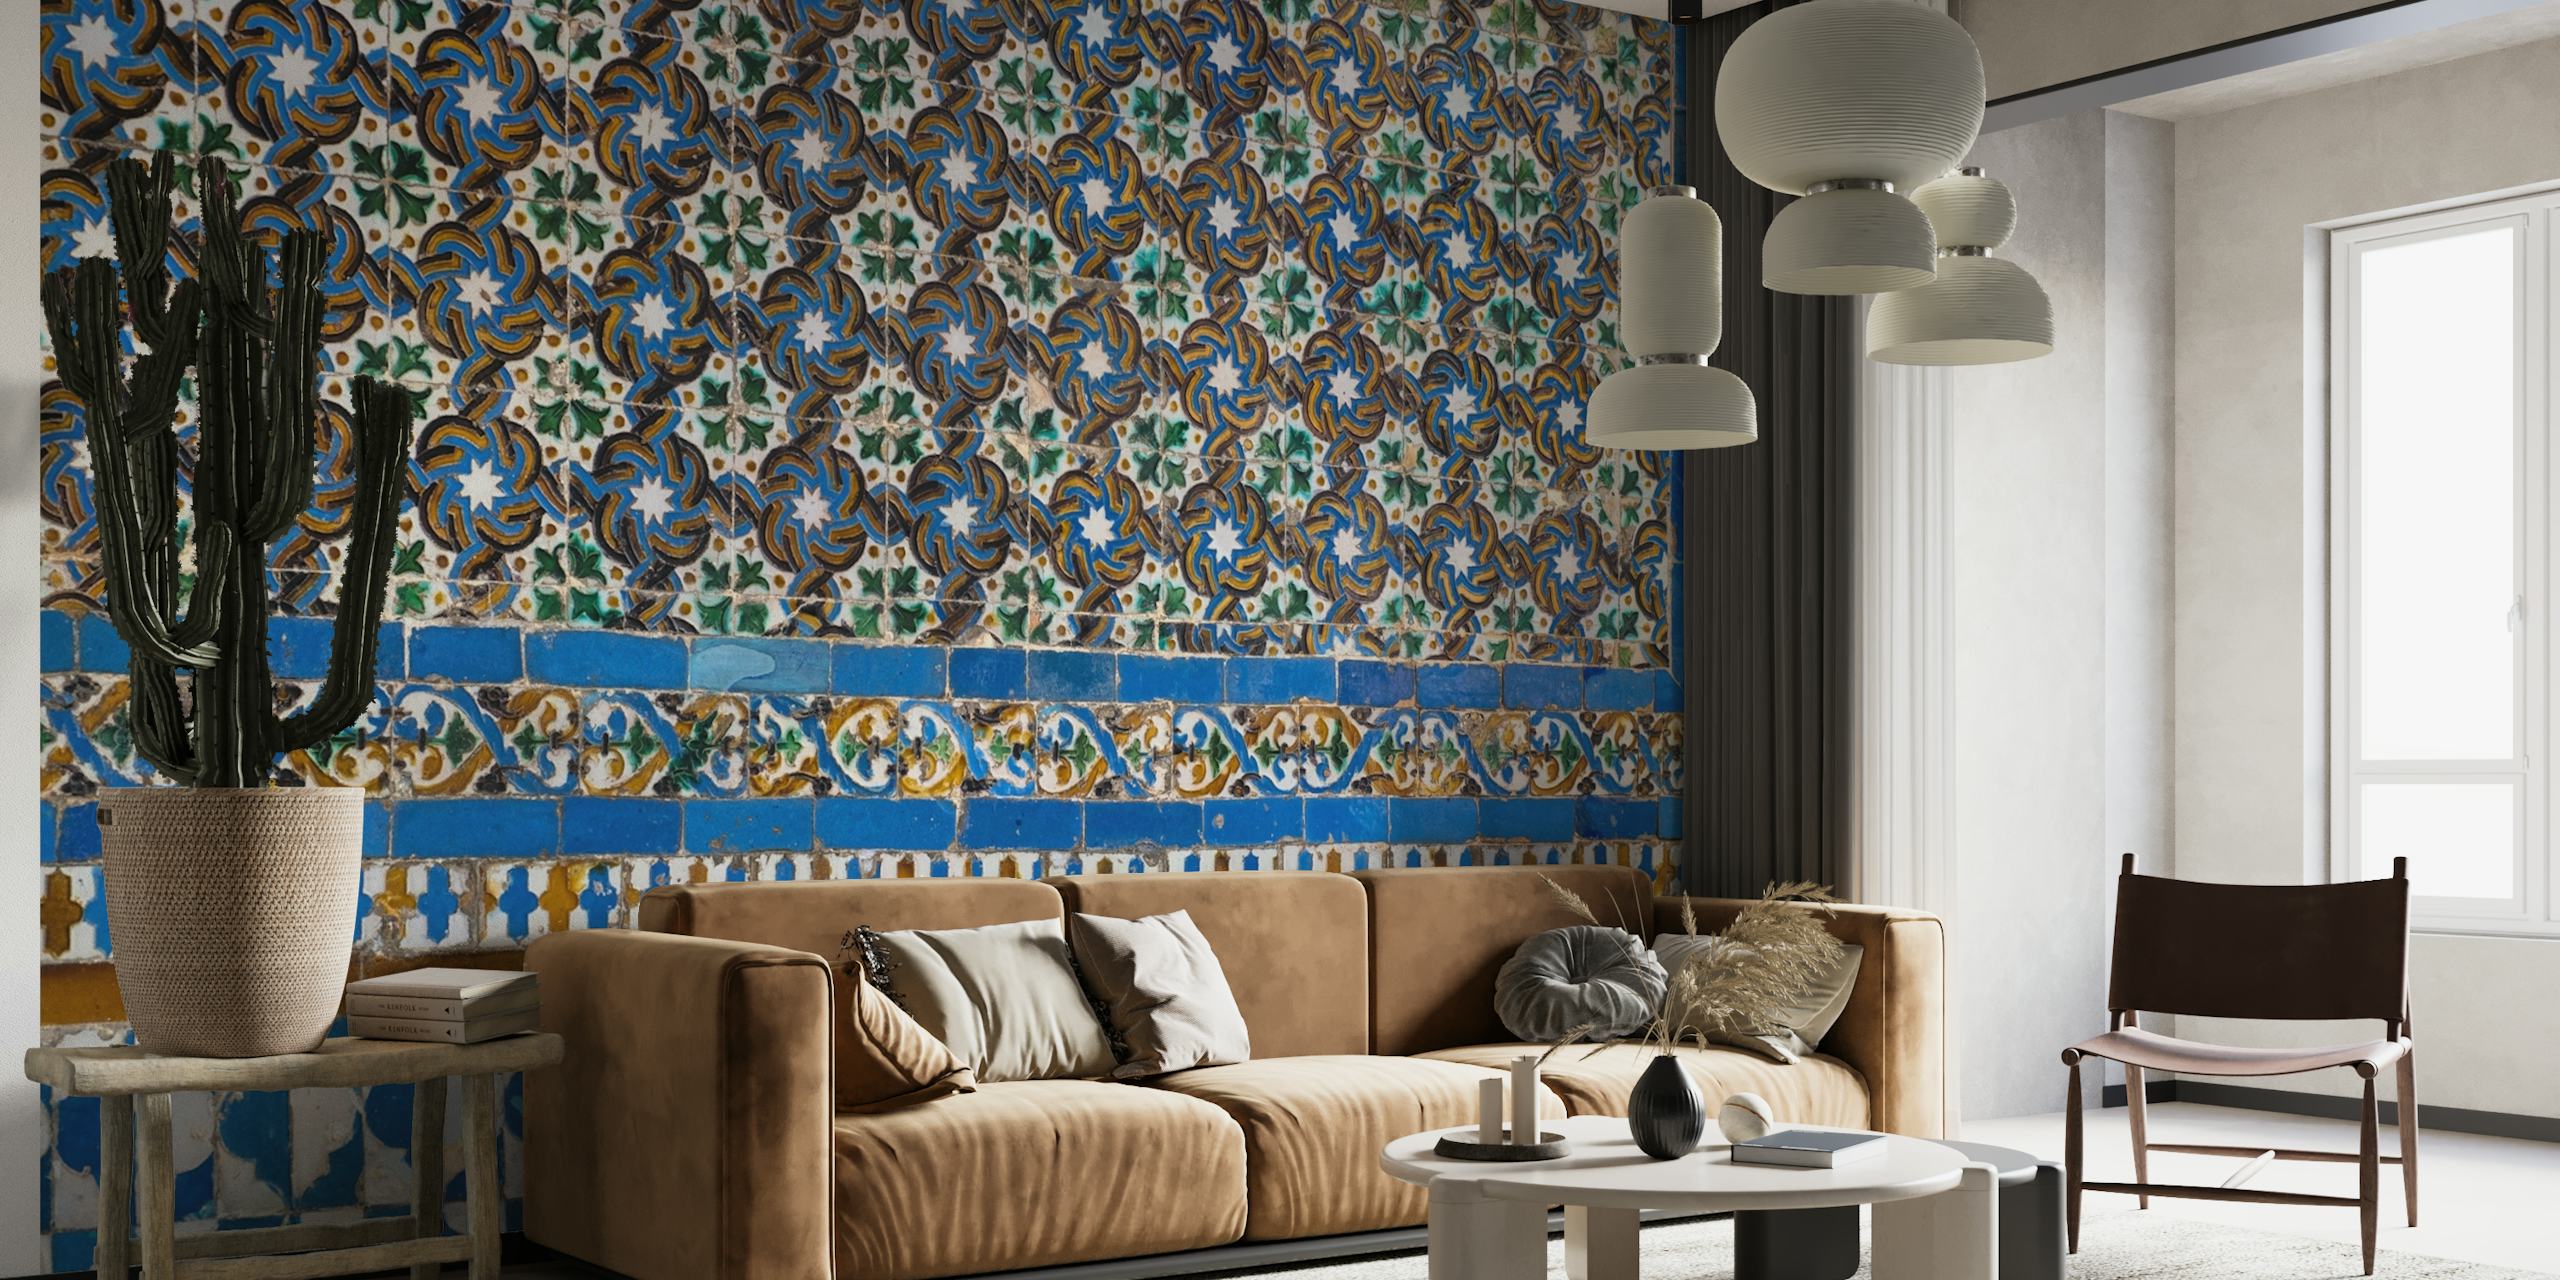 Mural de parede representando padrões tradicionais de azulejos espanhóis com designs complexos e um esquema de cores quentes.